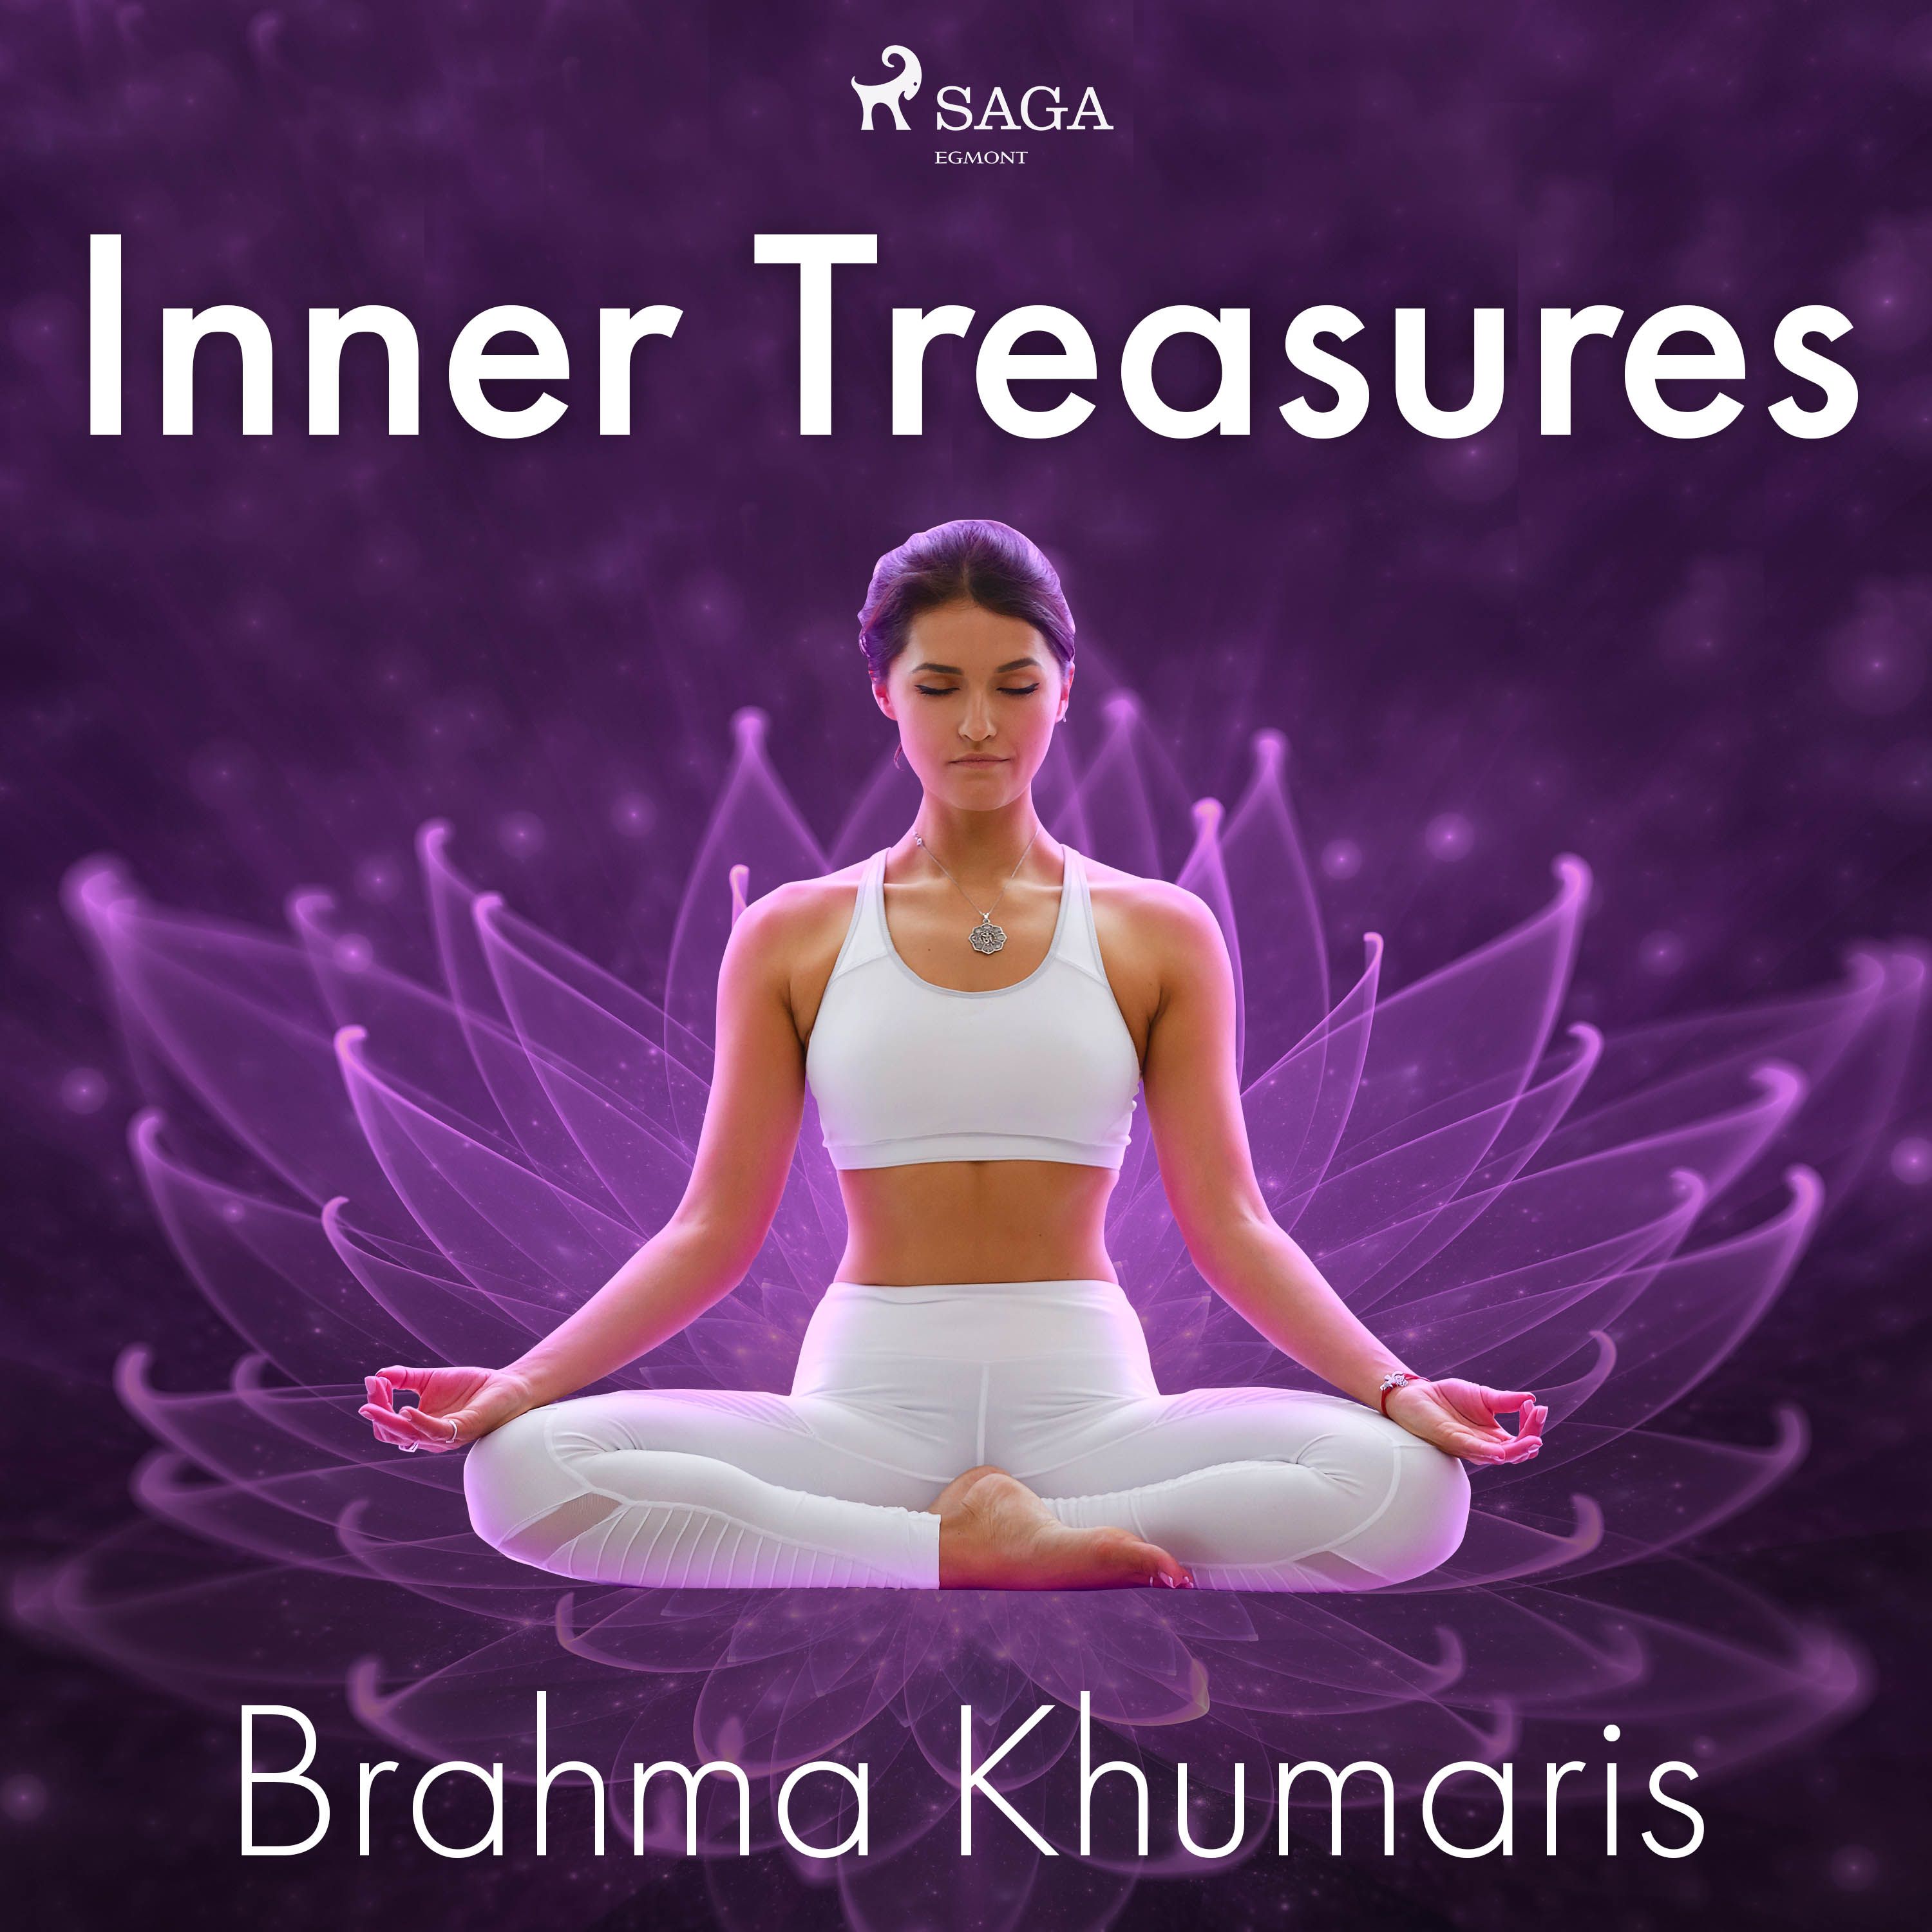 Inner Treasures, ljudbok av Brahma Khumaris